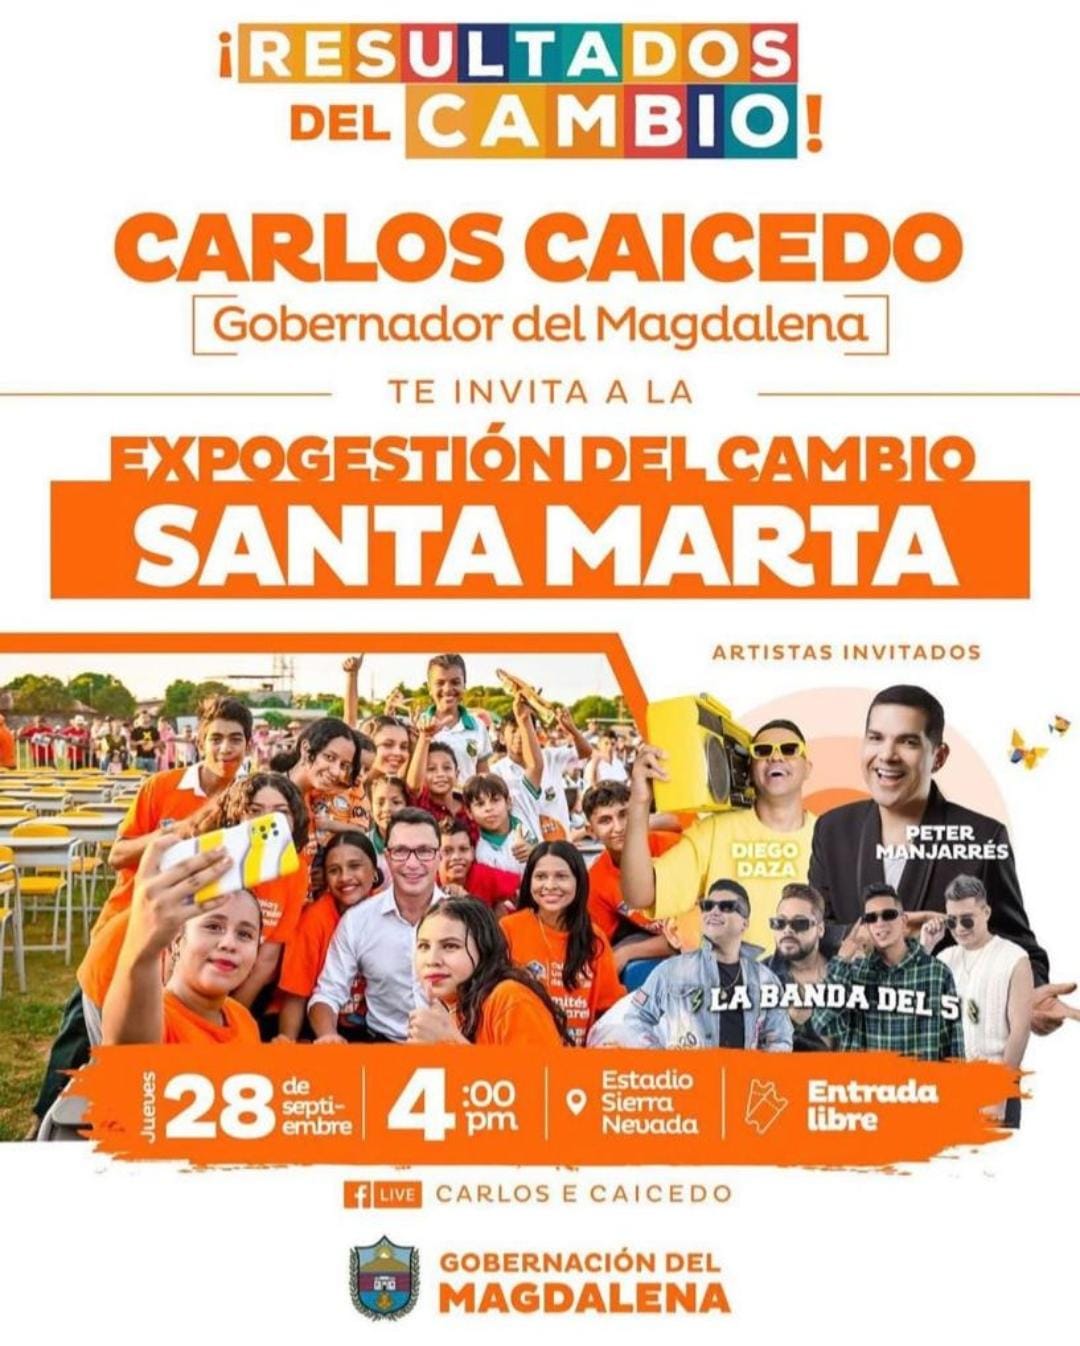 Nuevo evento convocado por la Gobernación del Magdalena